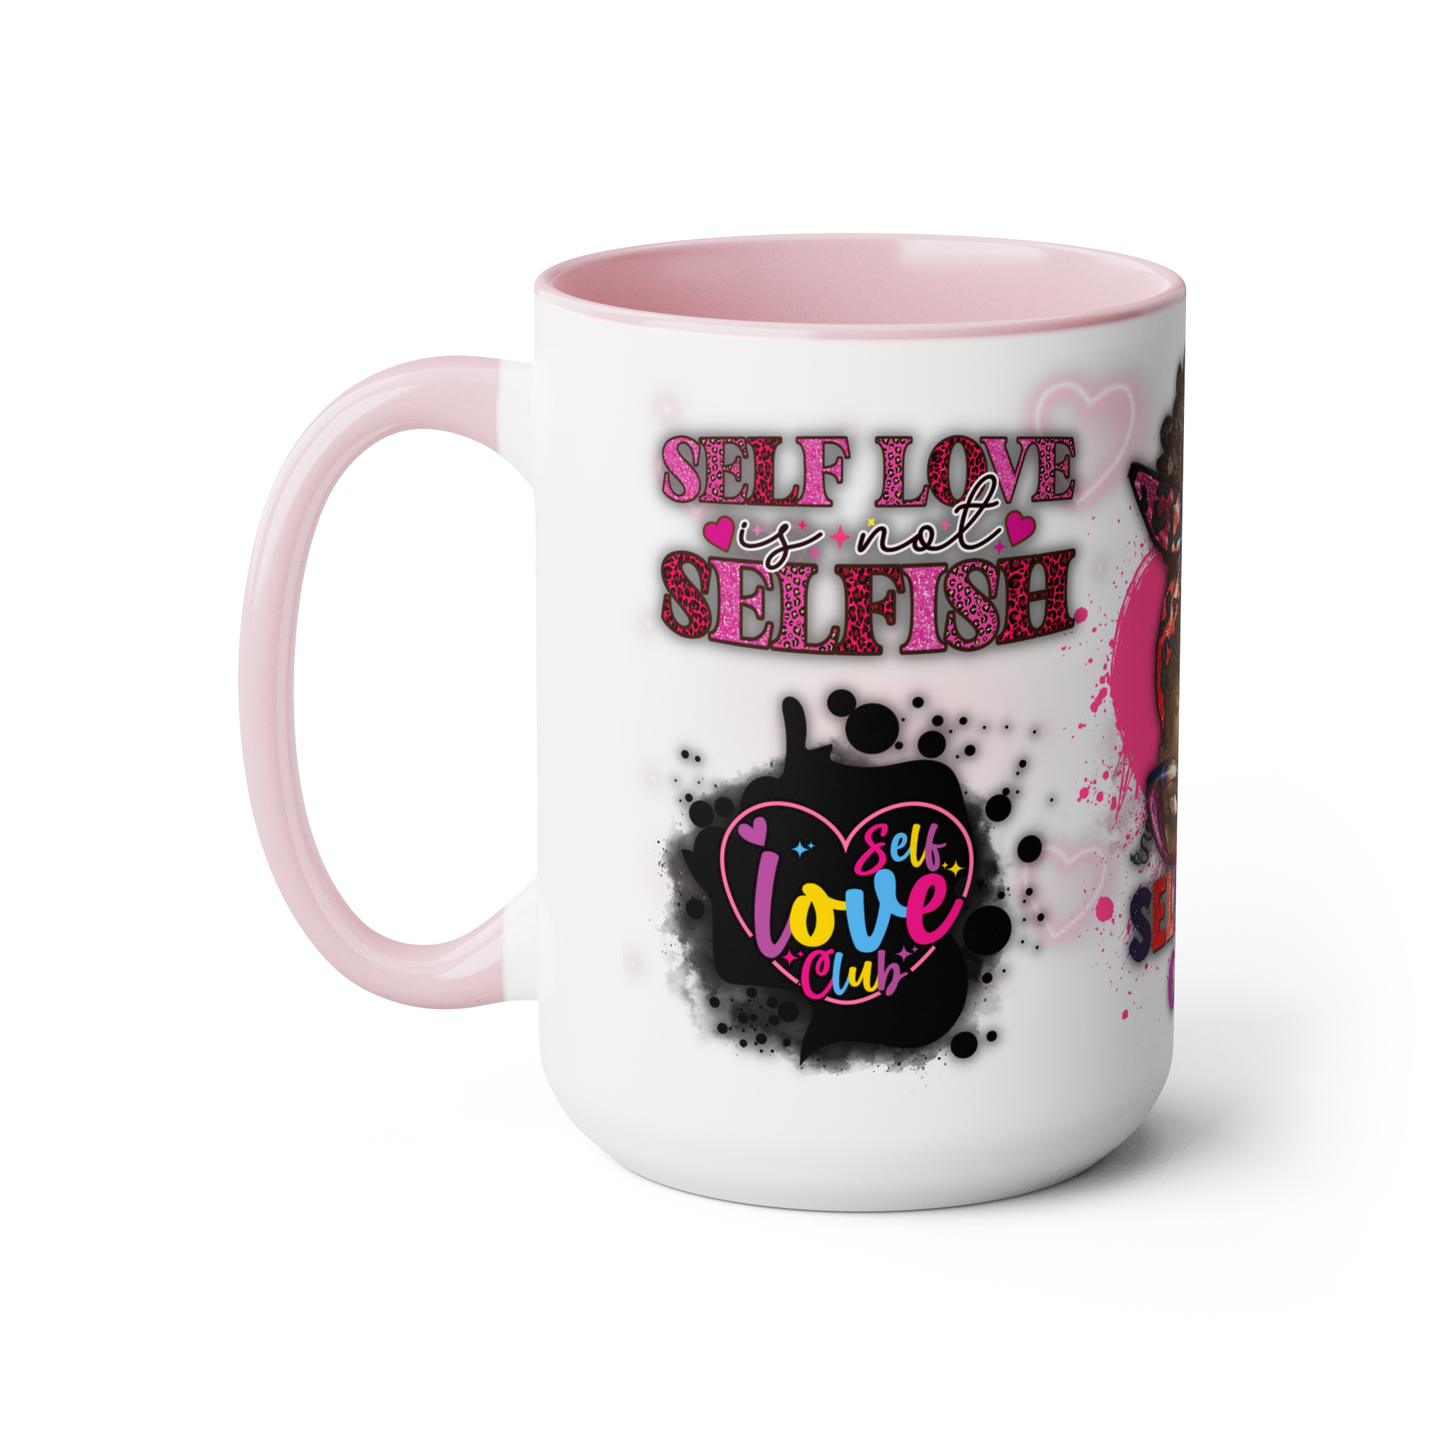 SELF LOVE CLUB MUG (Personalized) 15oz